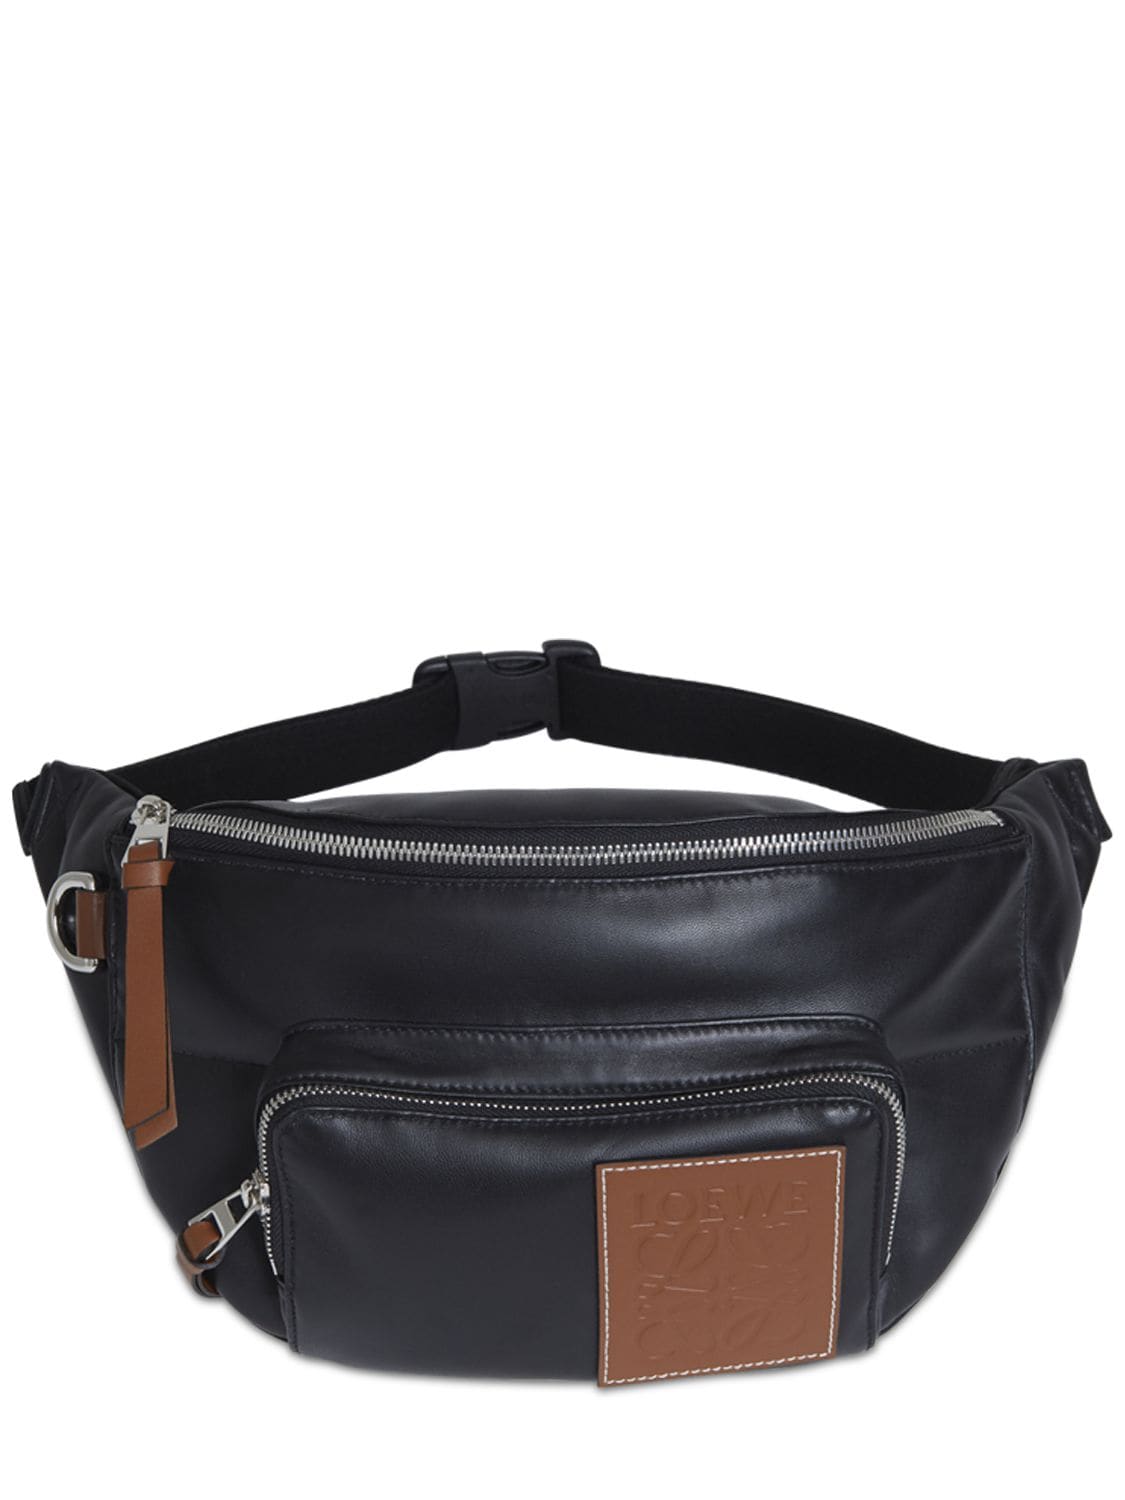 Loewe Waist Bag In Black Leather